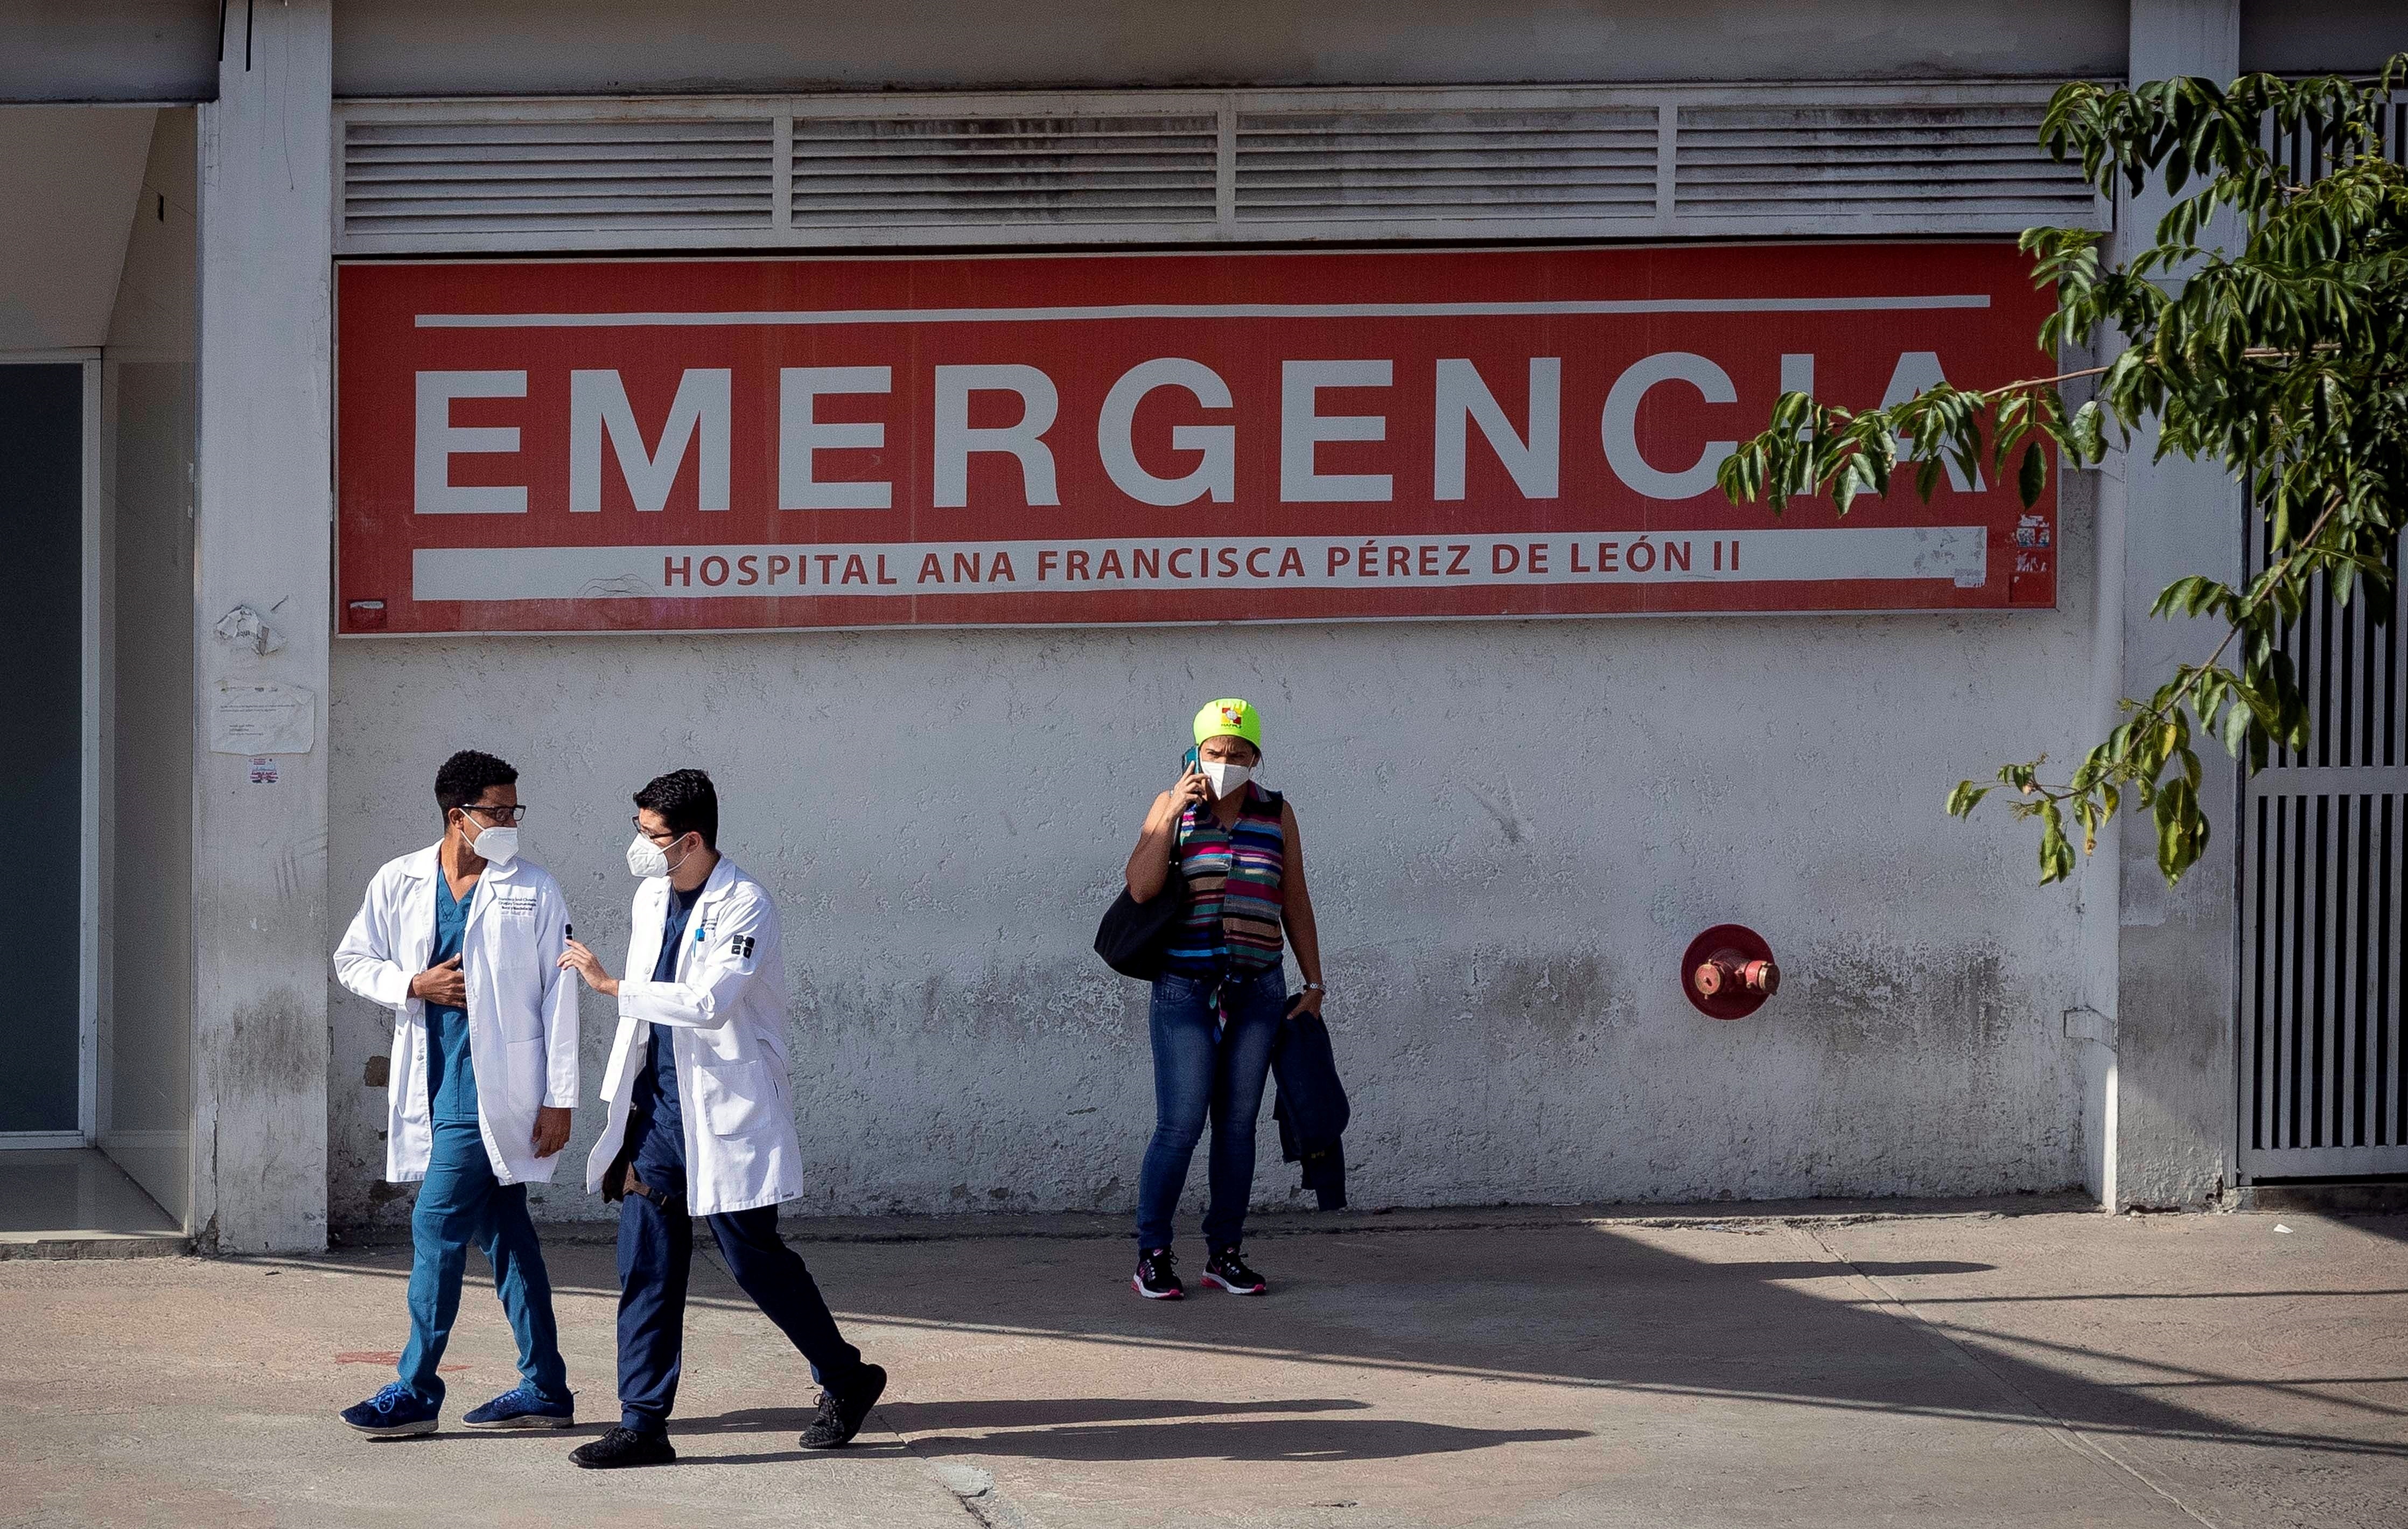 Advierten sobre riesgo de infecciones por falta de higiene hospitalaria en Venezuela